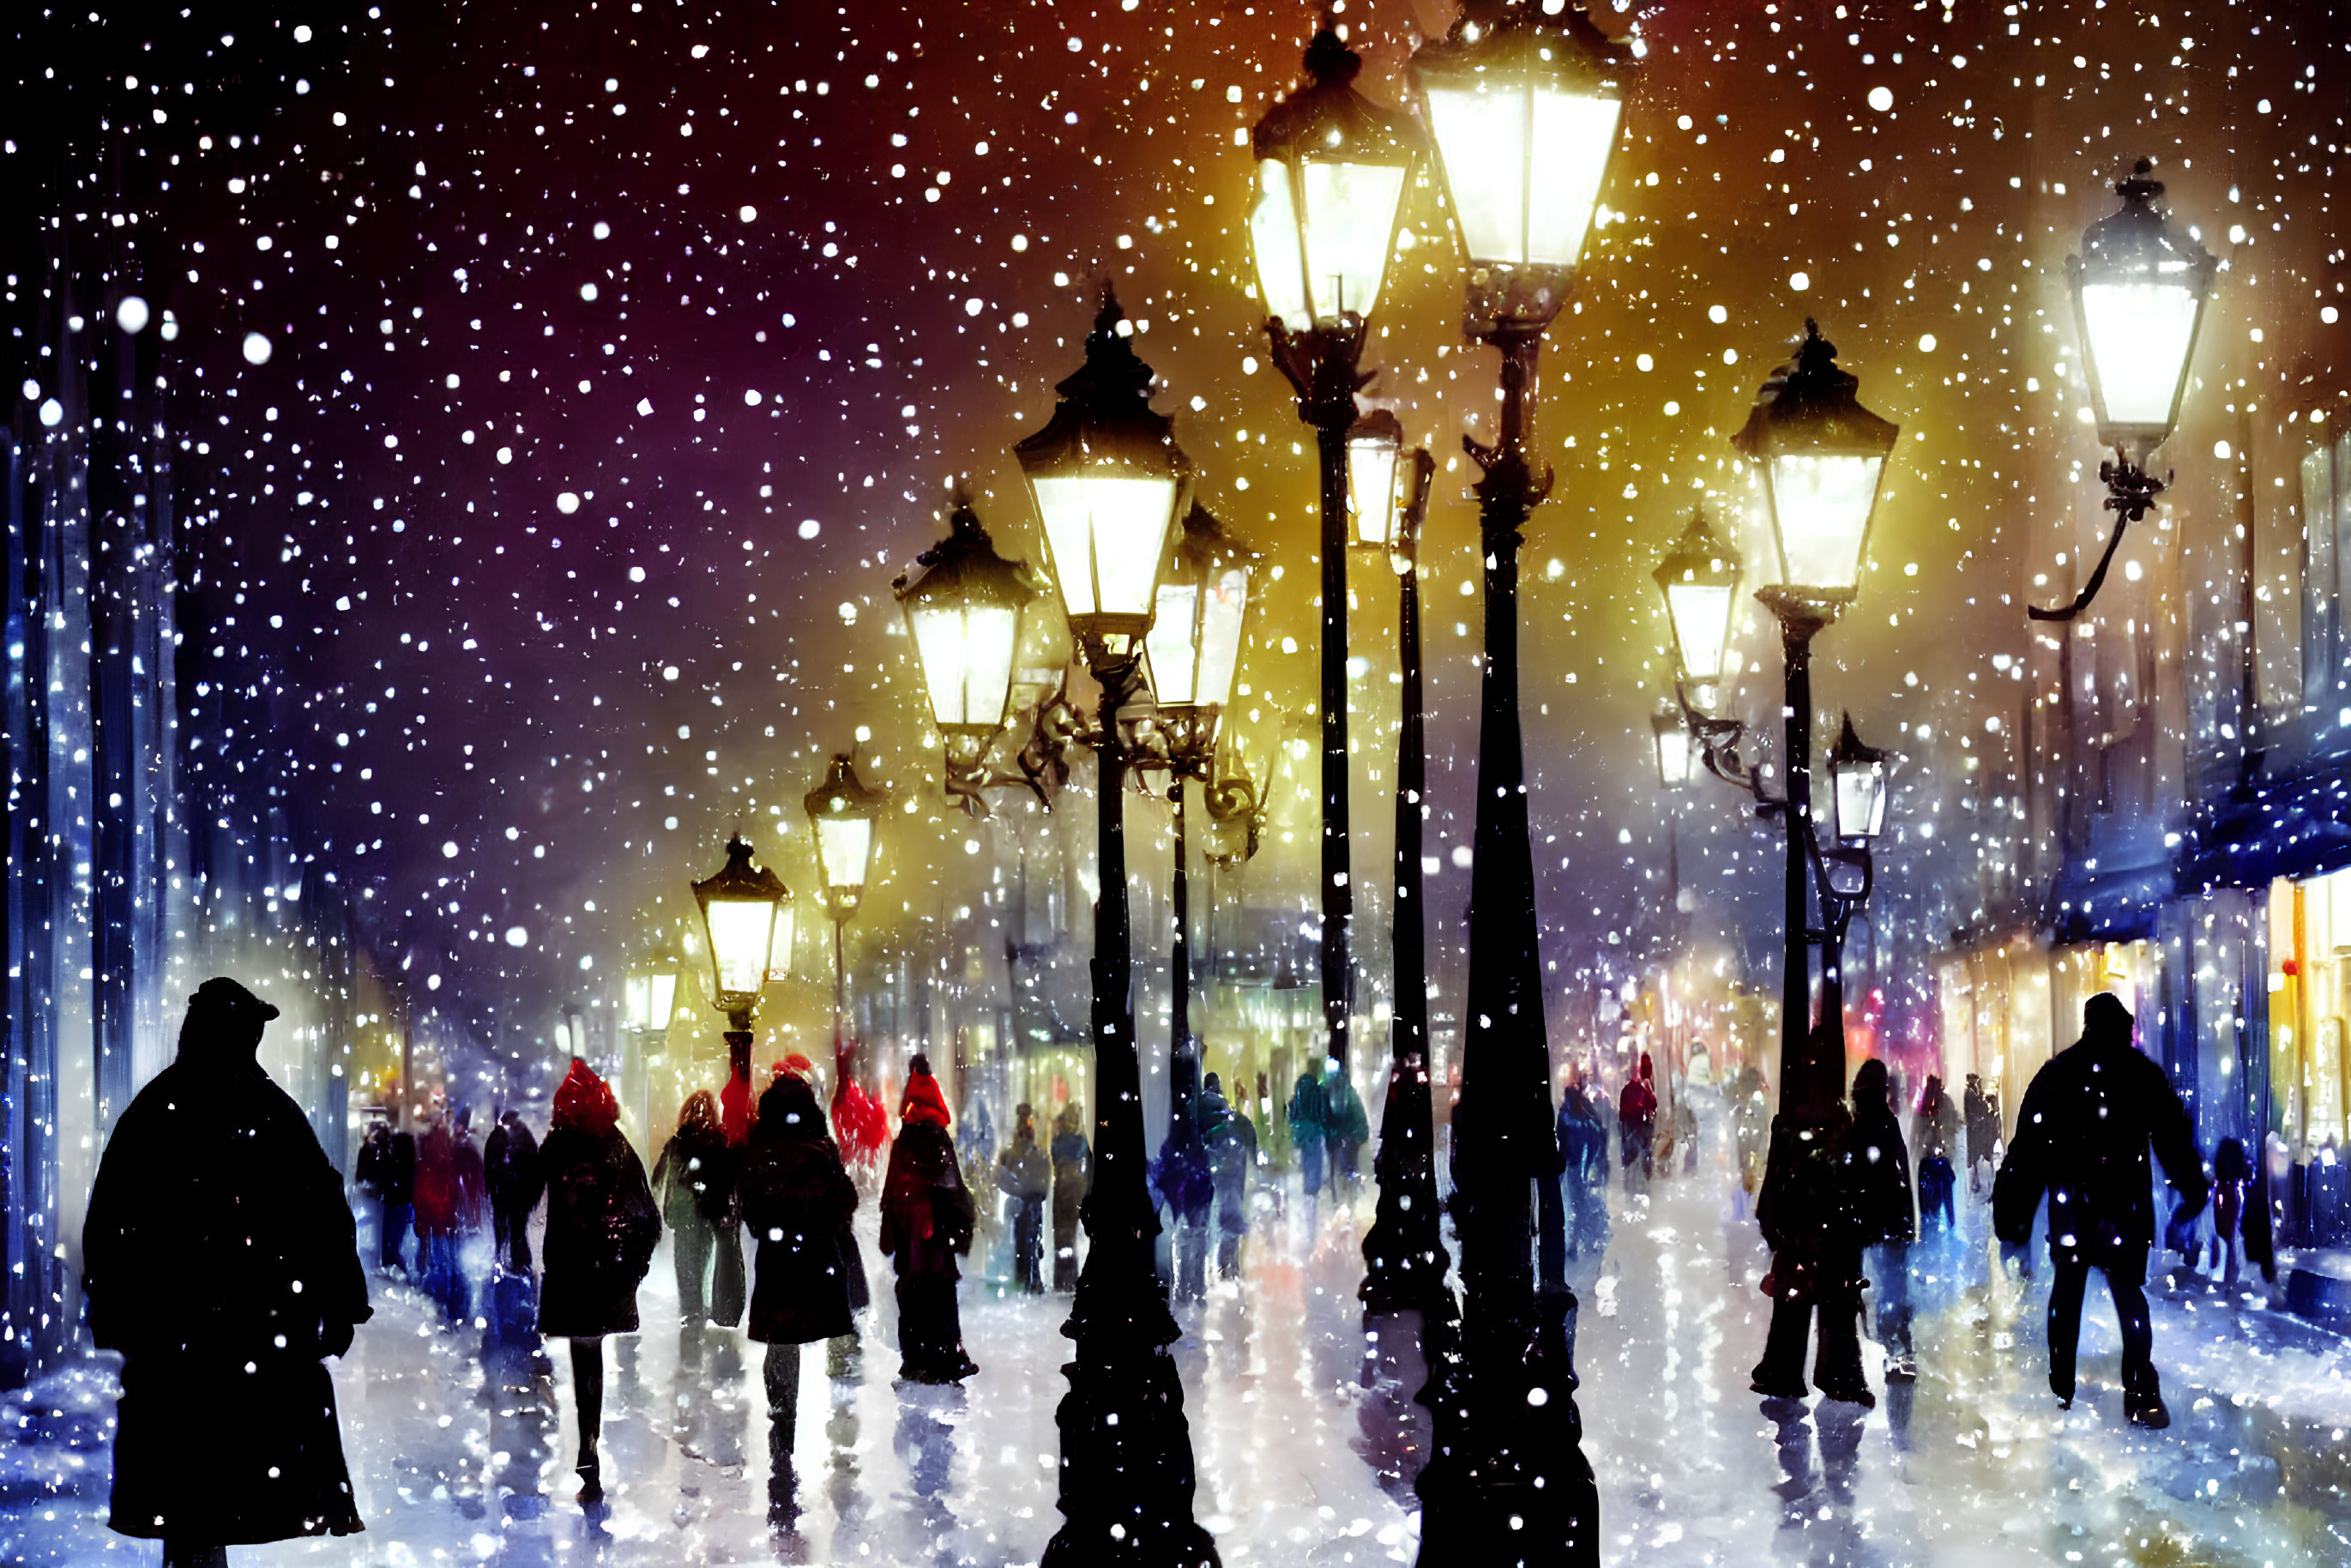 Snowy Night Street Scene: People Walking Under Street Lamps